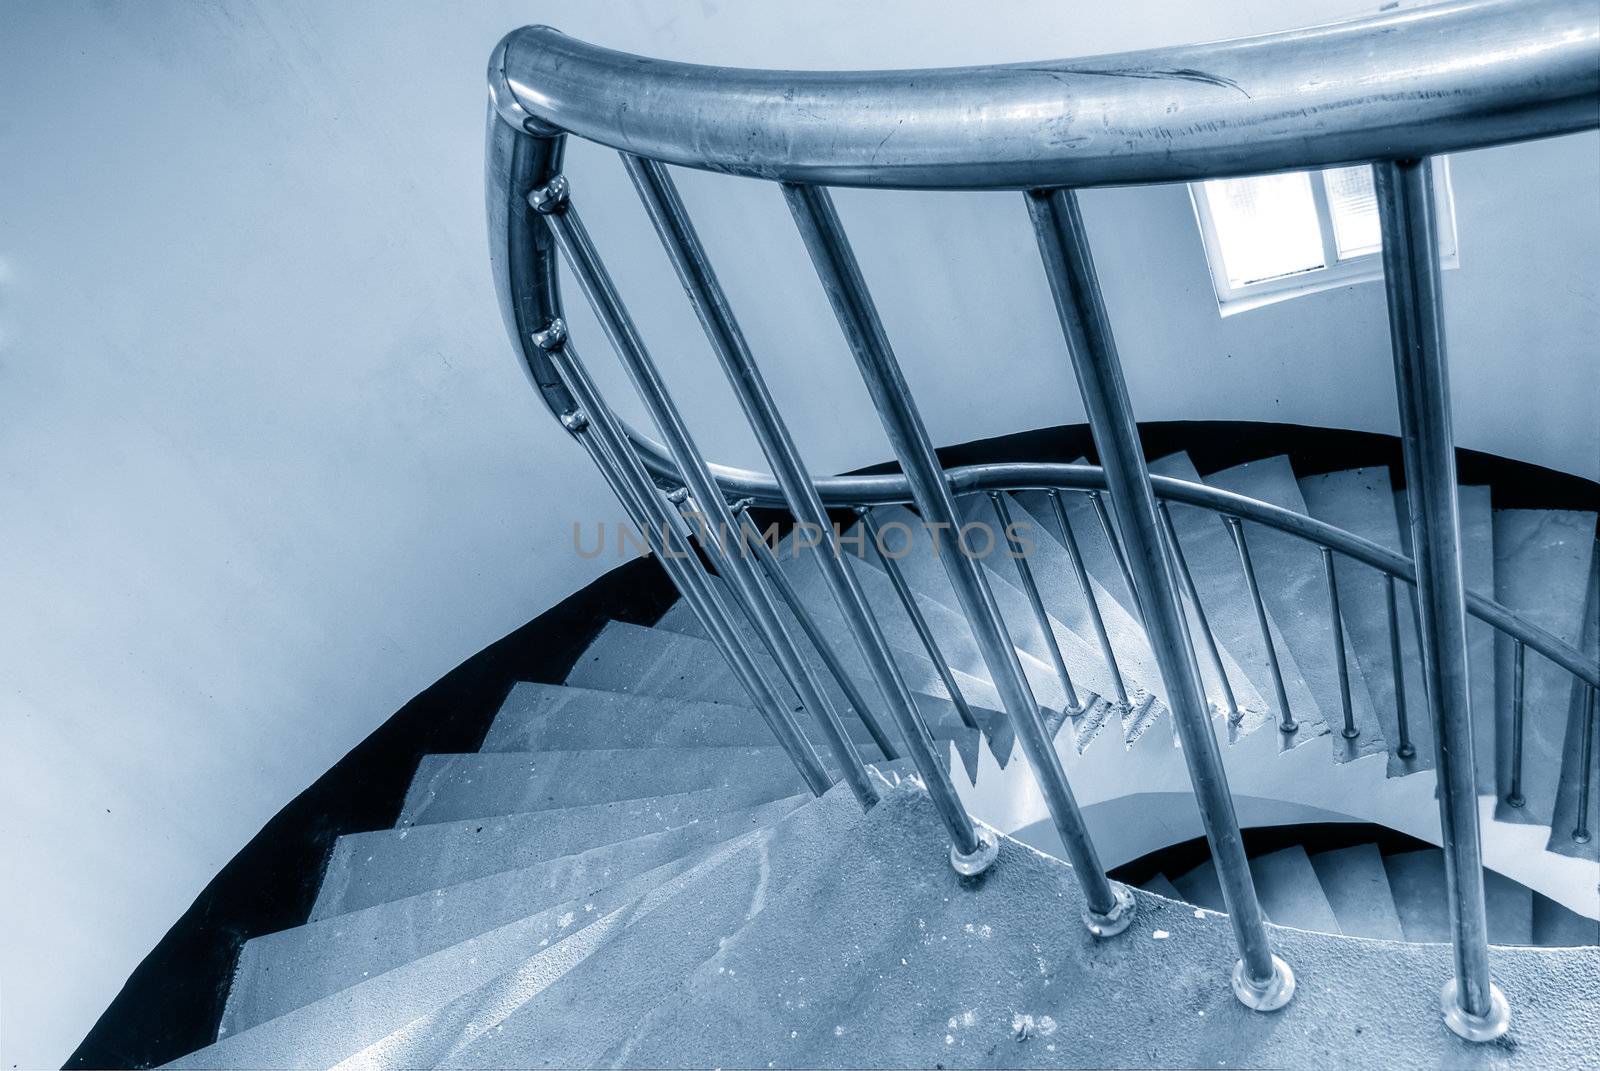 spiraling stairs by elwynn